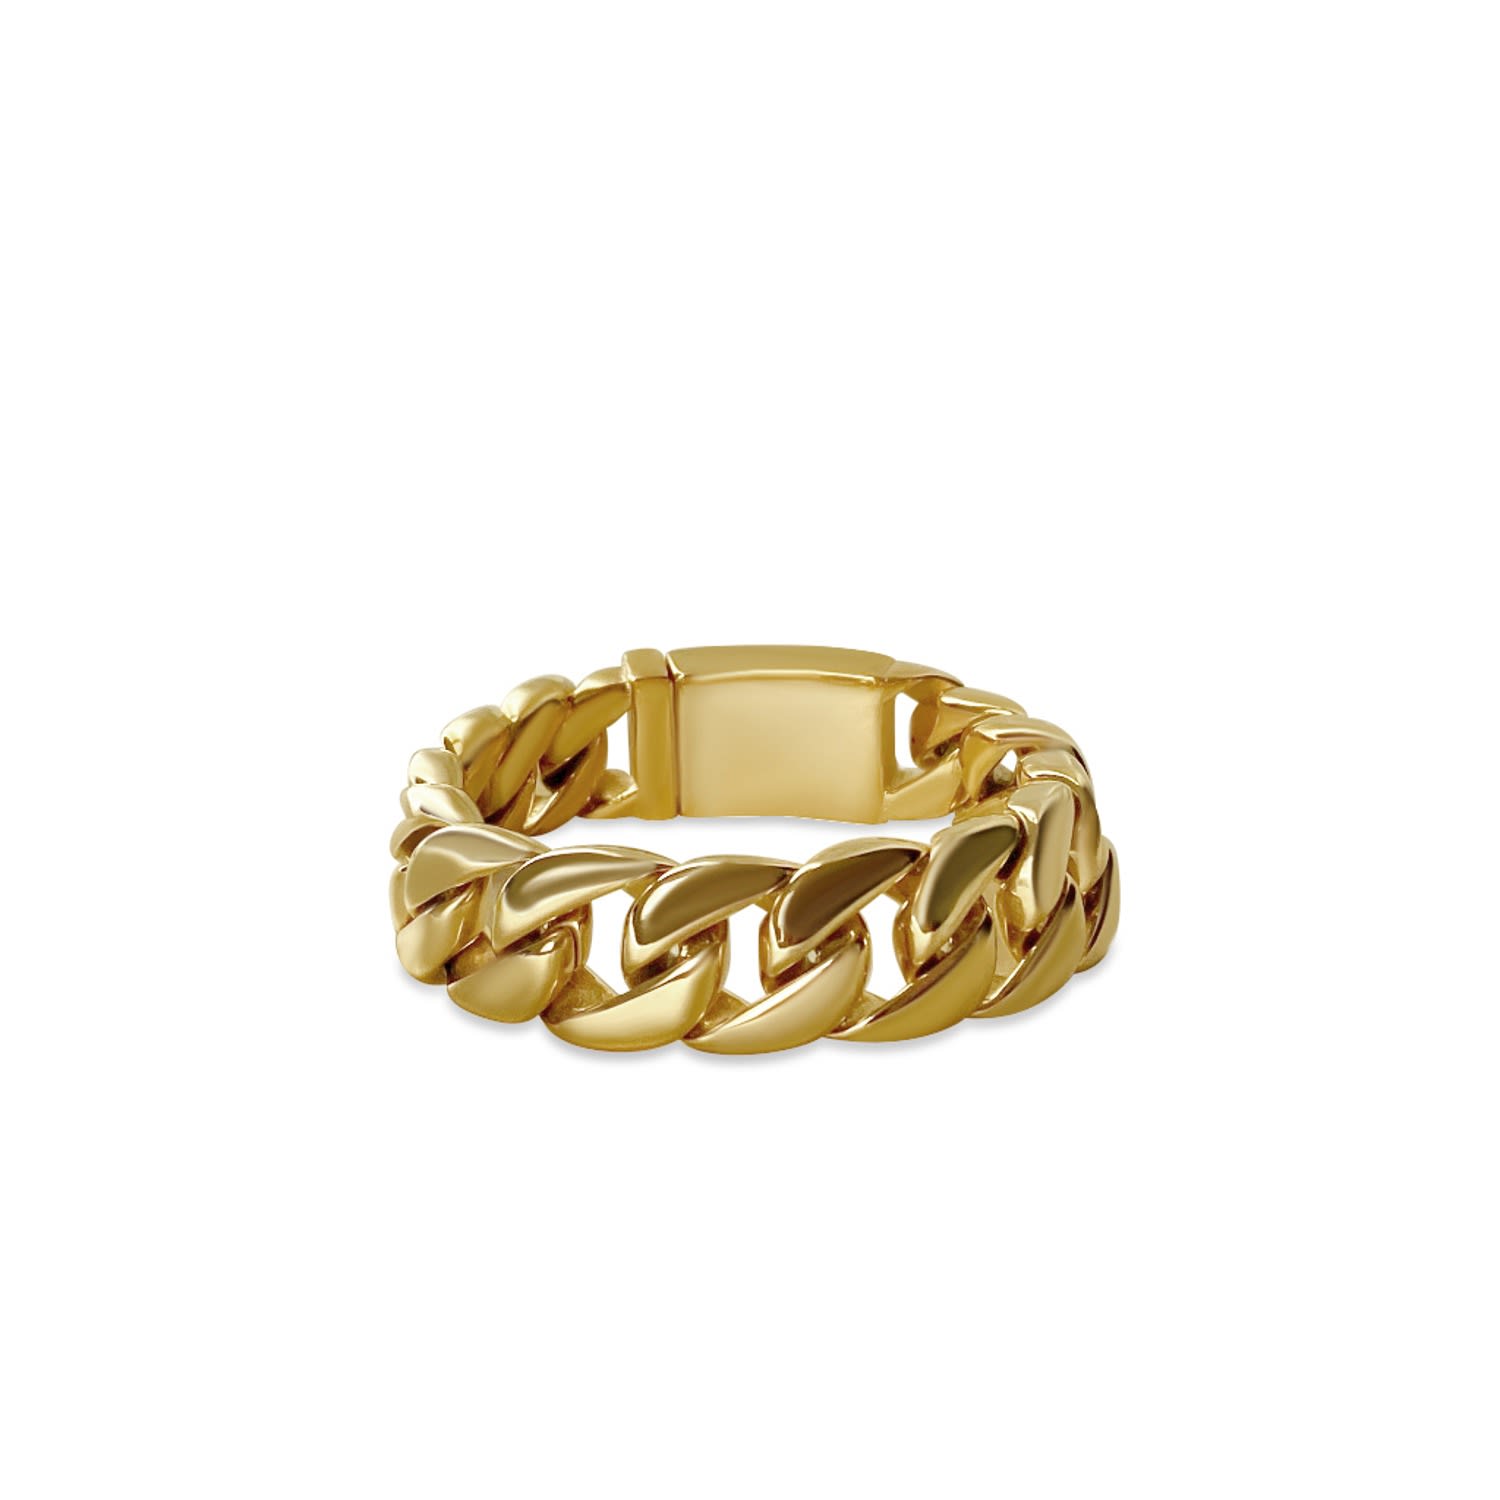 Shop Anisa Sojka Women's Gold Chunky Chain Bracelet